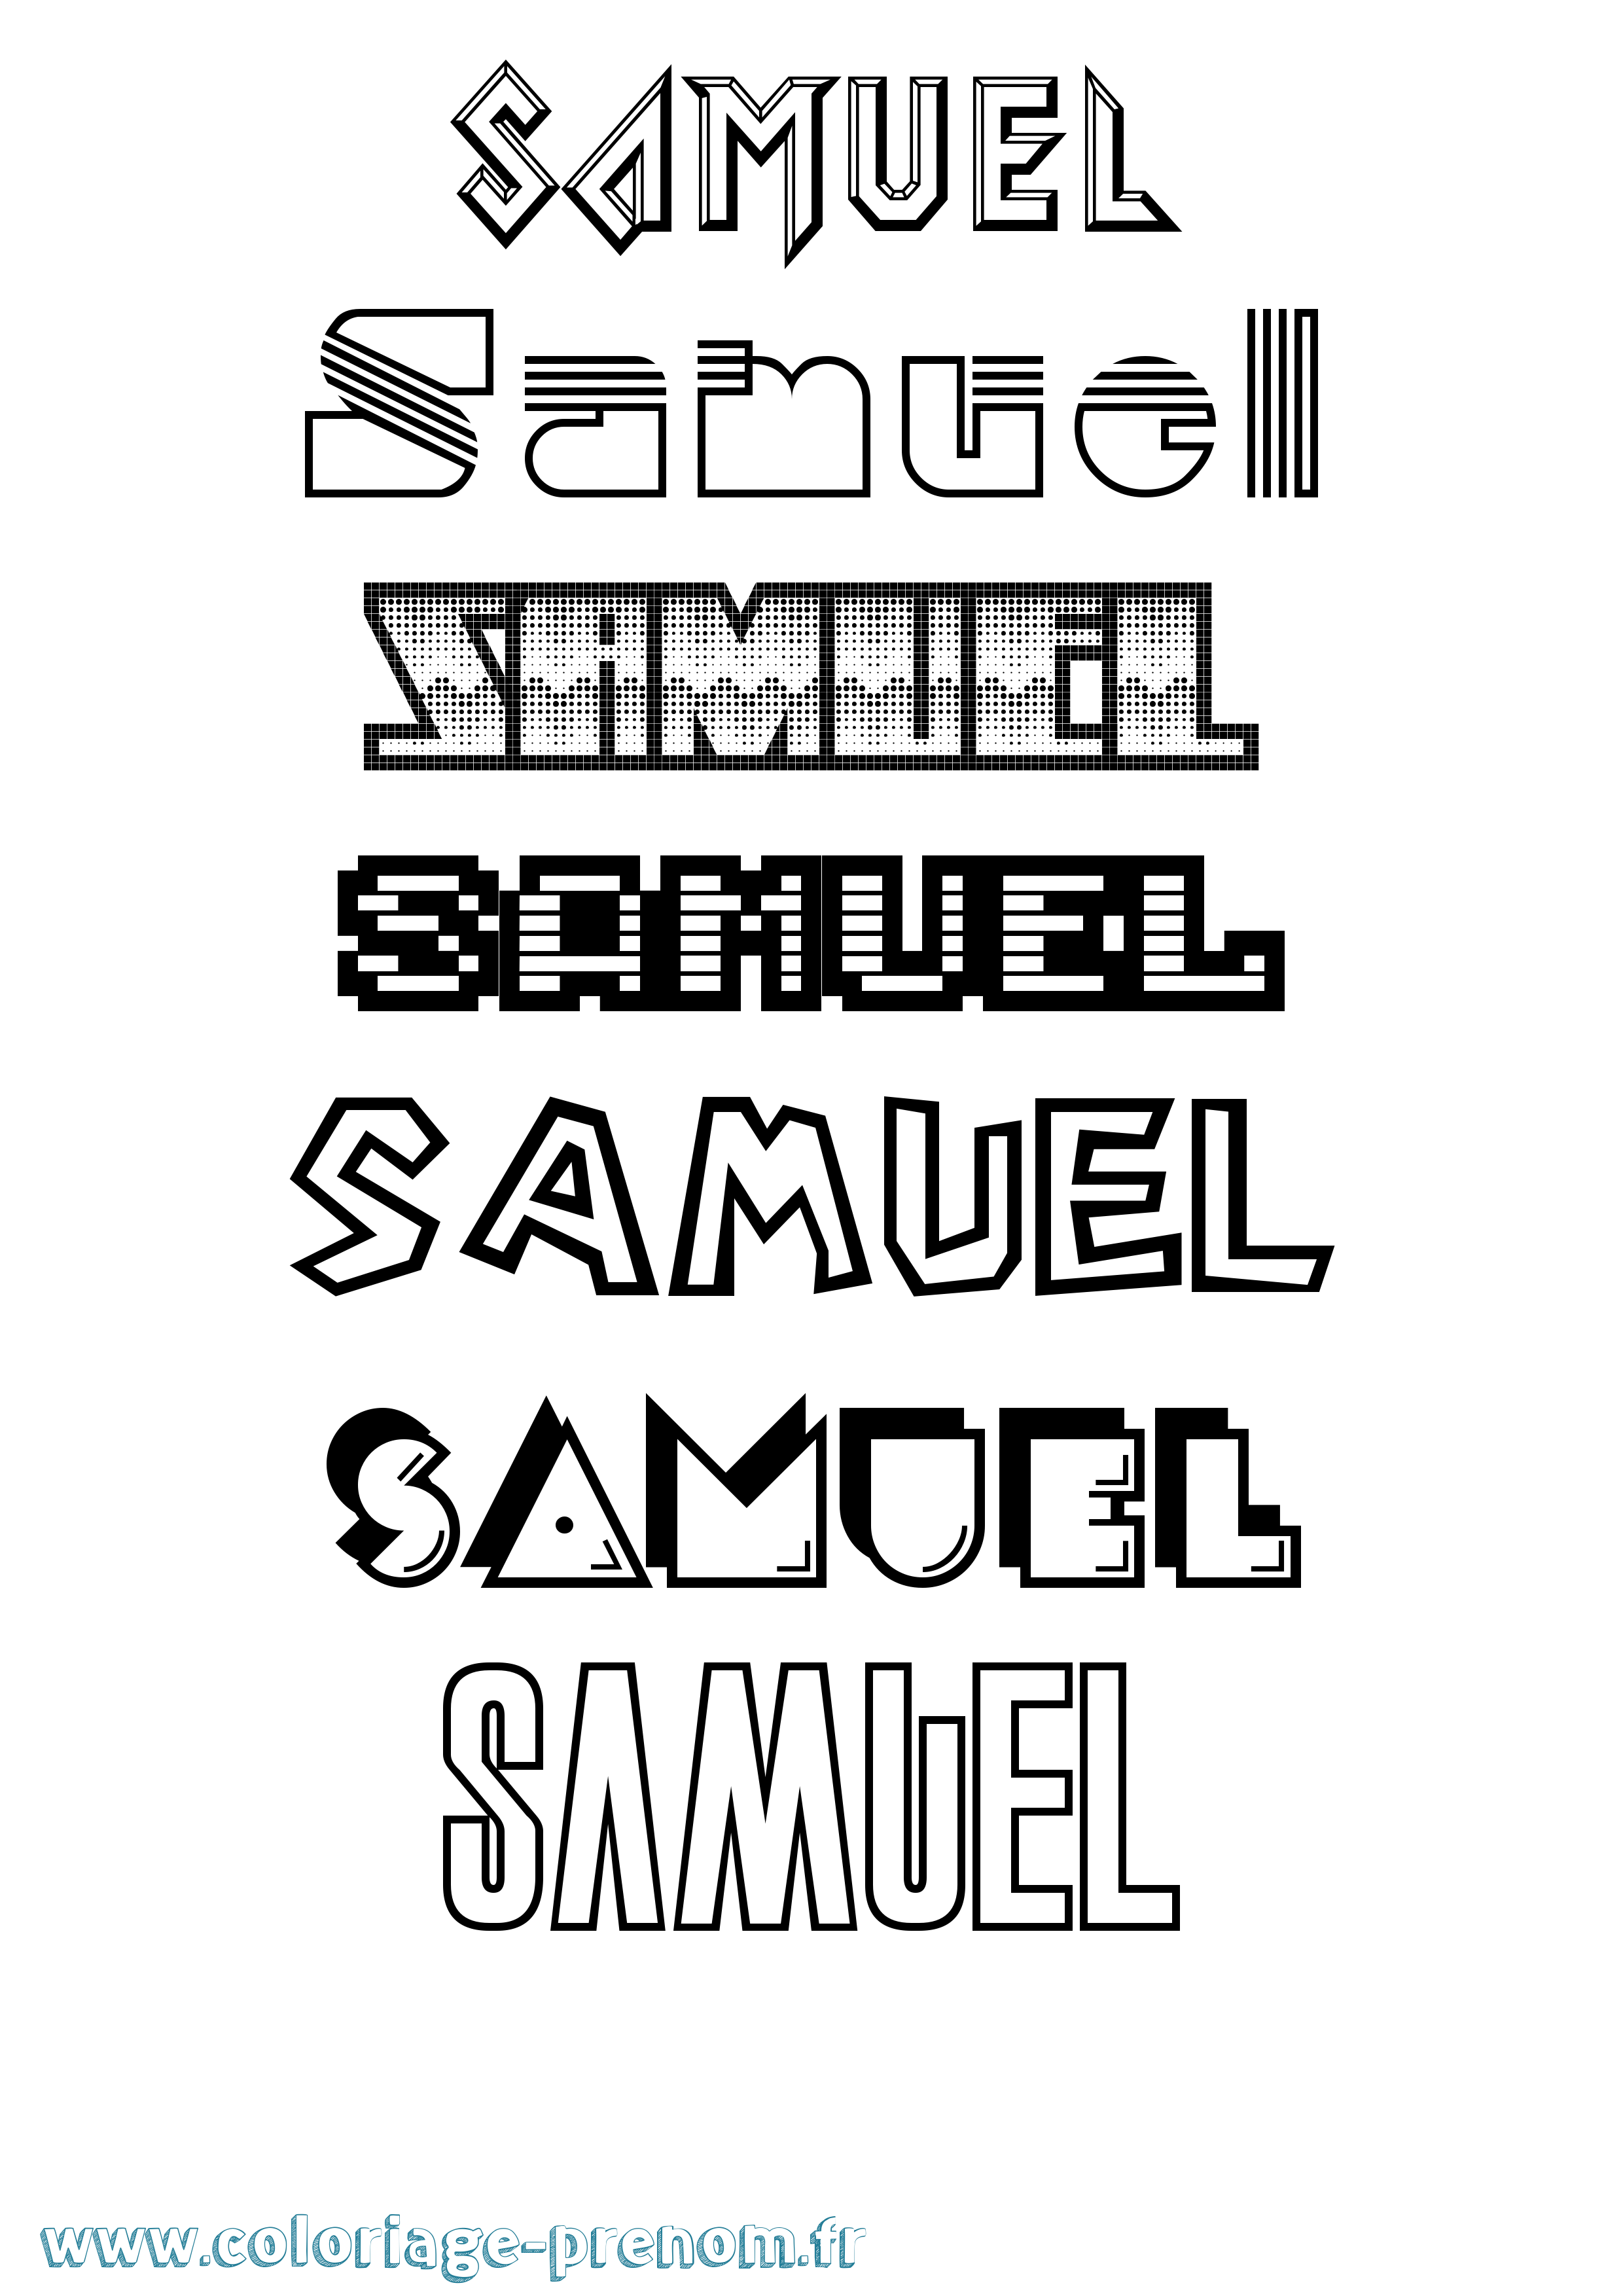 Coloriage prénom Samuel